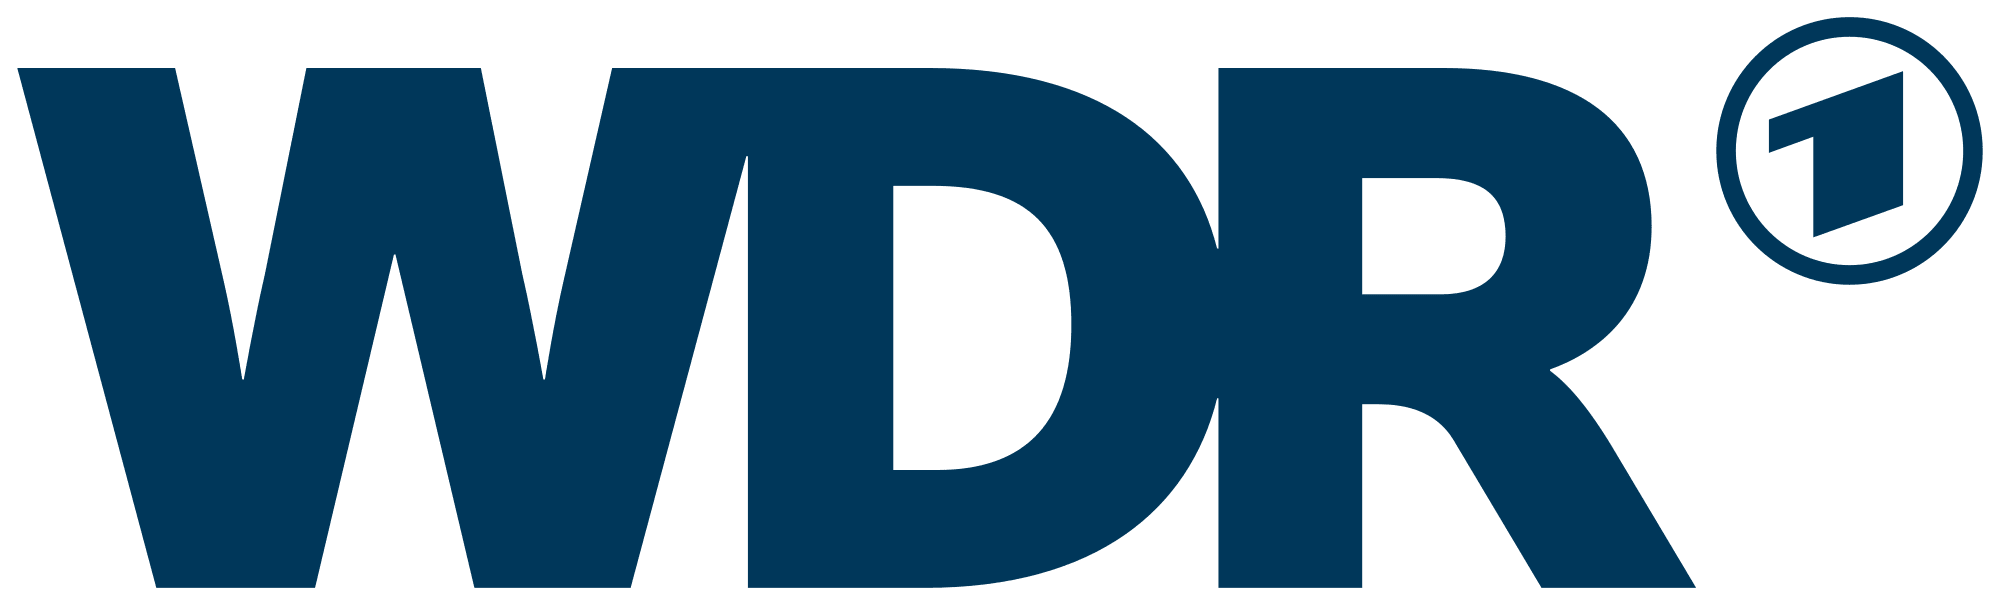 WDR-logo